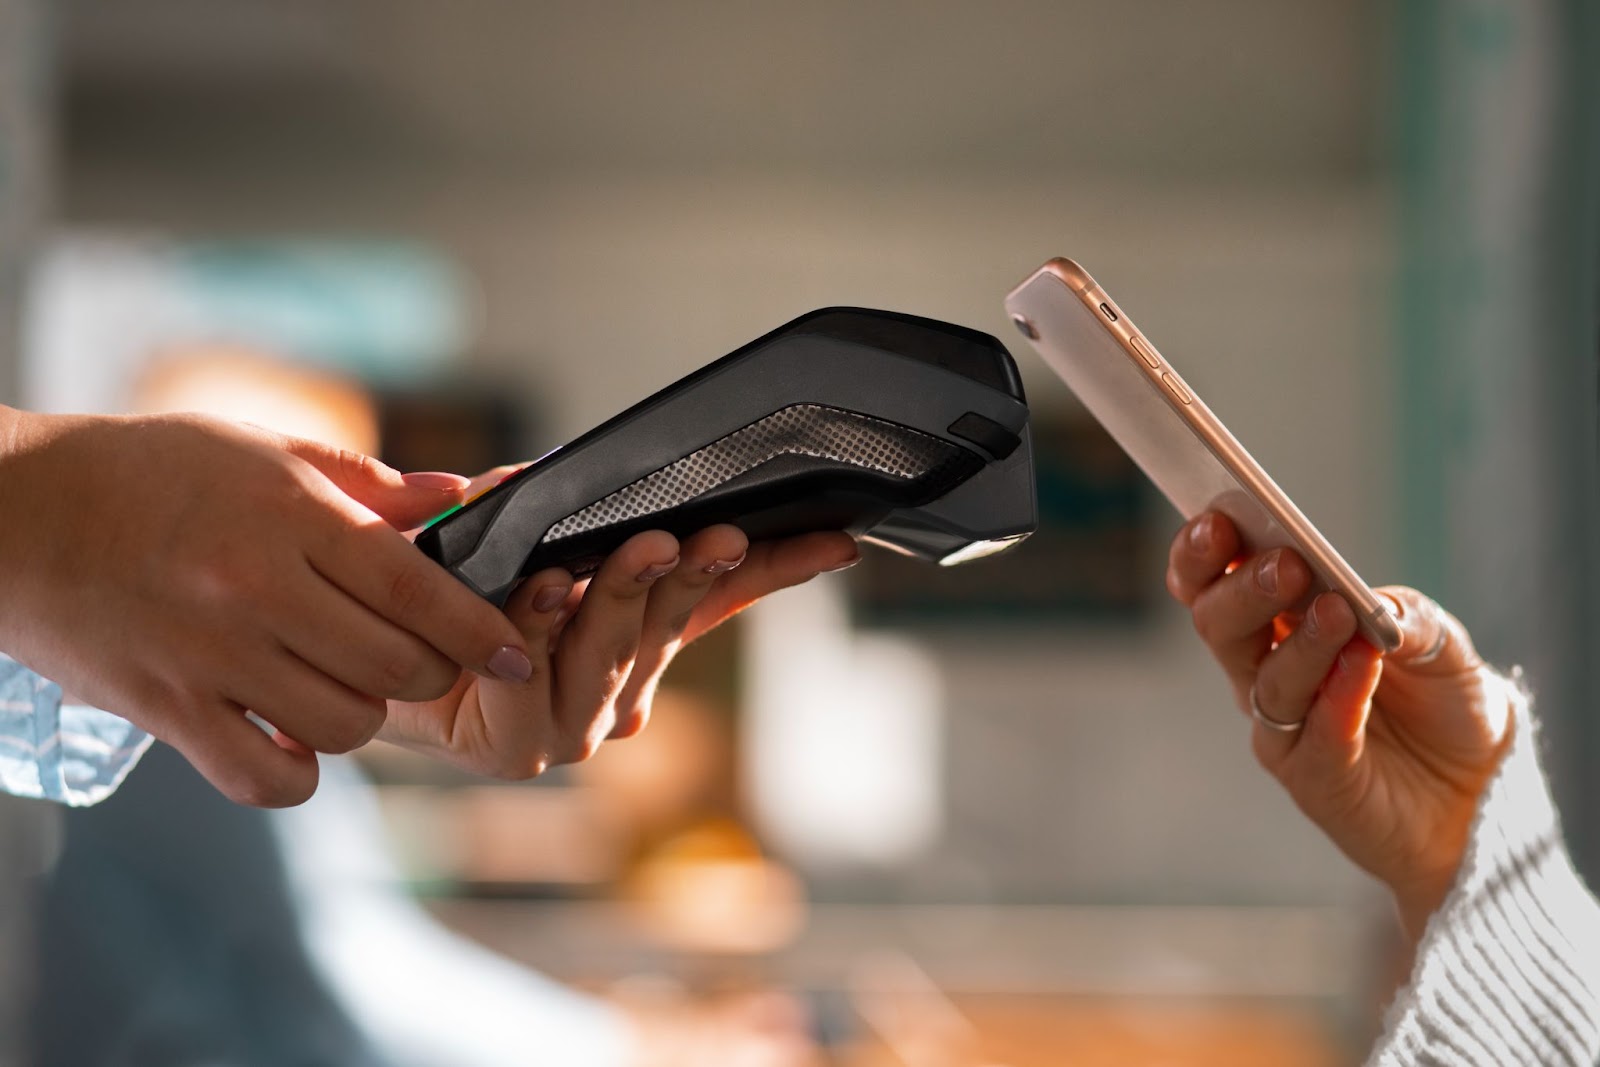 Imagem de uma maquininha de cartão e um celular sendo encostado próximo, fazendo um pagamento por aproximação. As mãos que seguram os objetos parecem femininas.